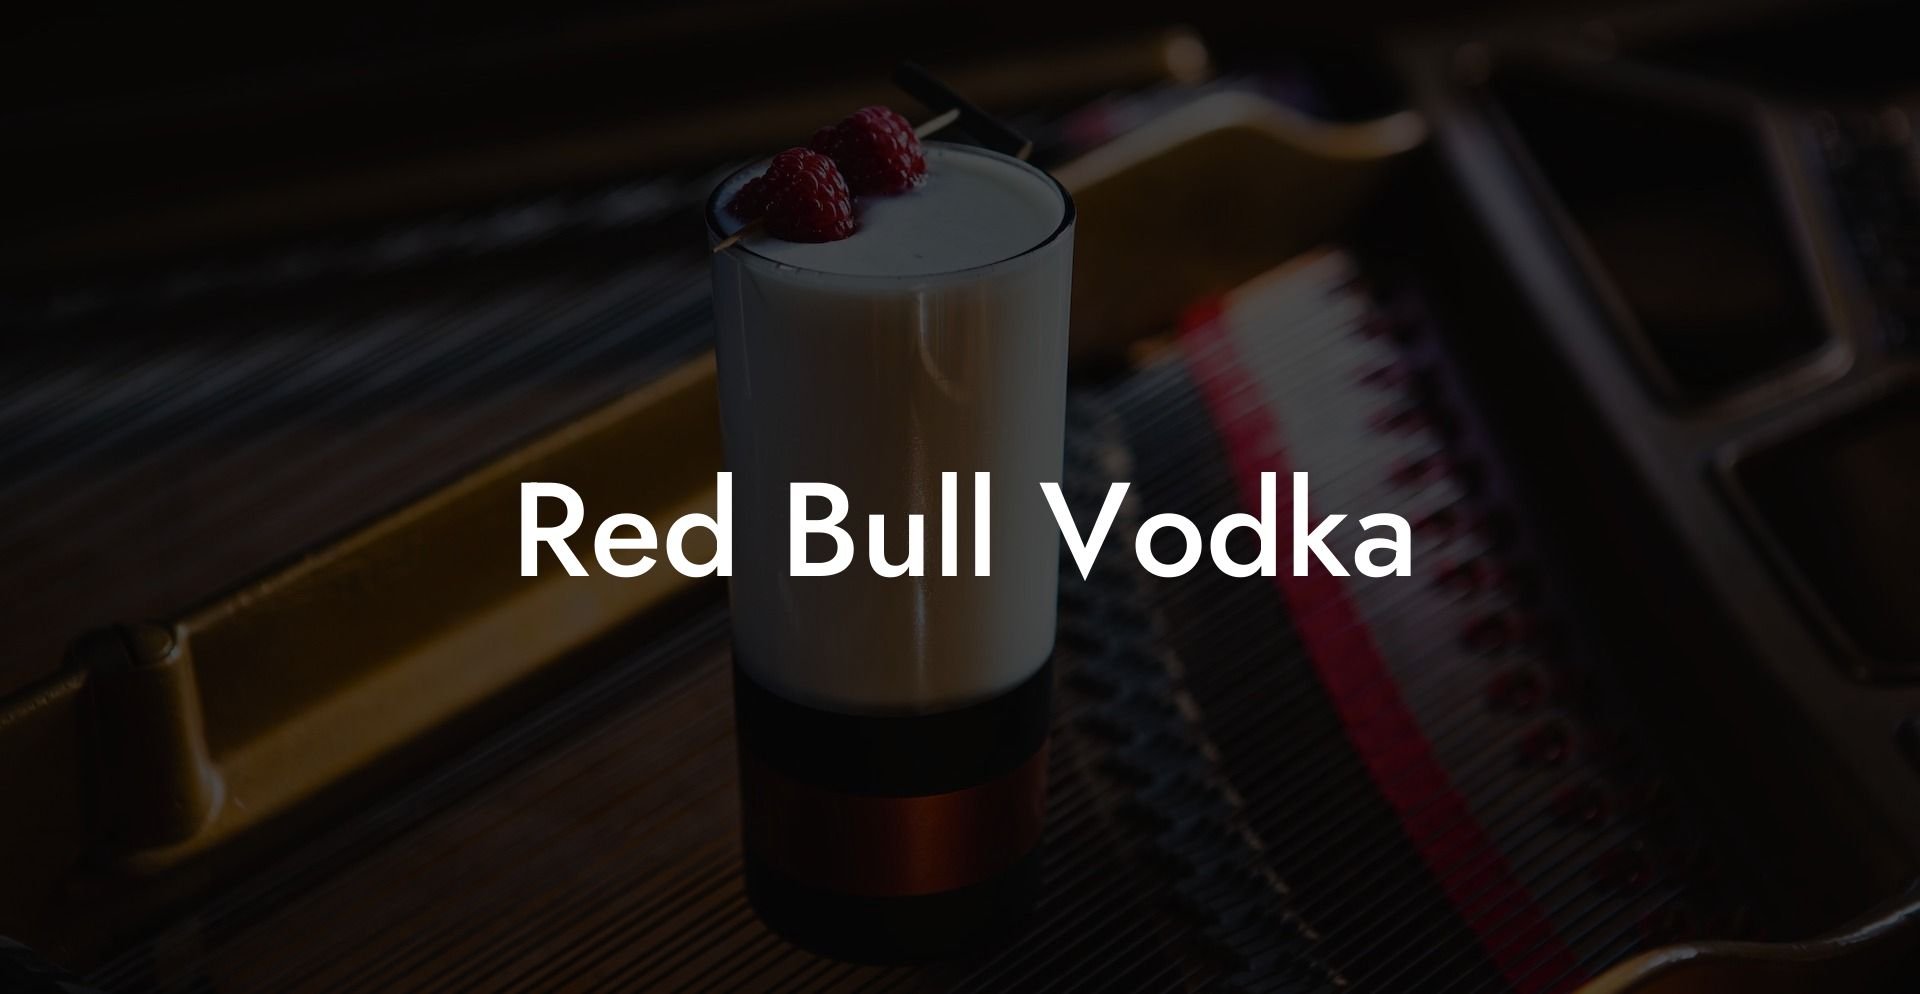 Red Bull Vodka